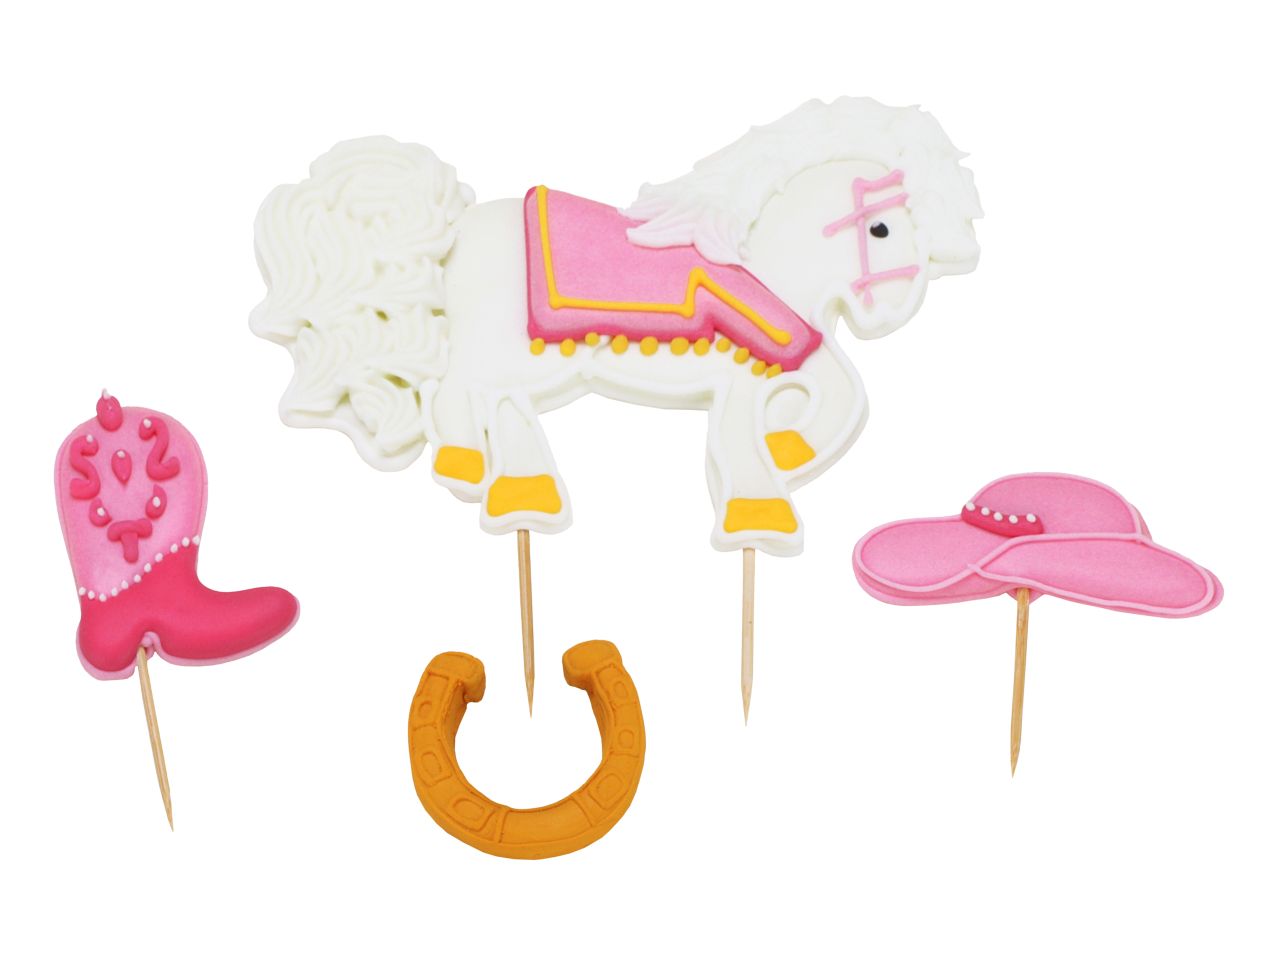 Zuckerdekor Pferde-Set, Pink & Weiß, 4 Designs (Pferd, Stiefel, Hut, Hufeisen)